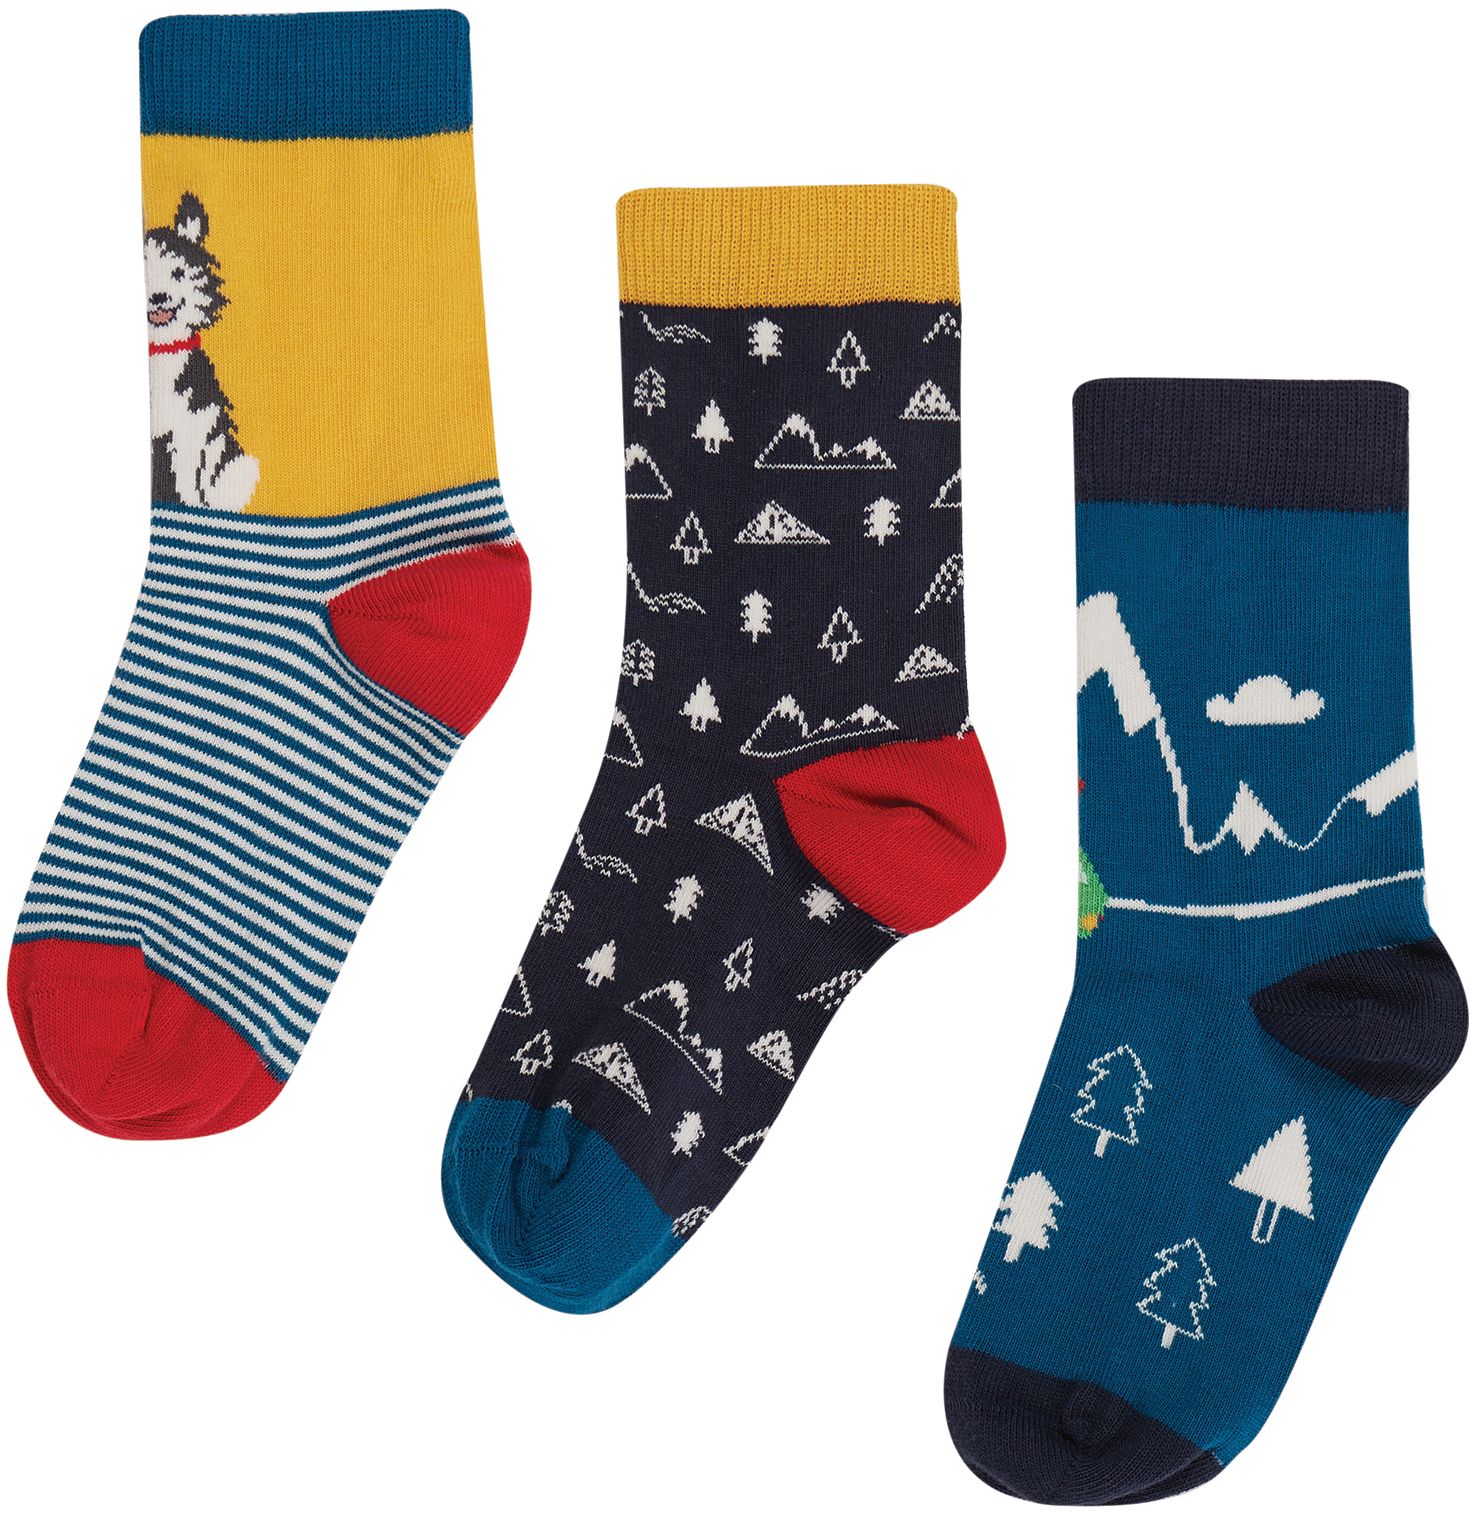 Kinder-Socken im 3er-Pack mit Husky und Schneelandschaft